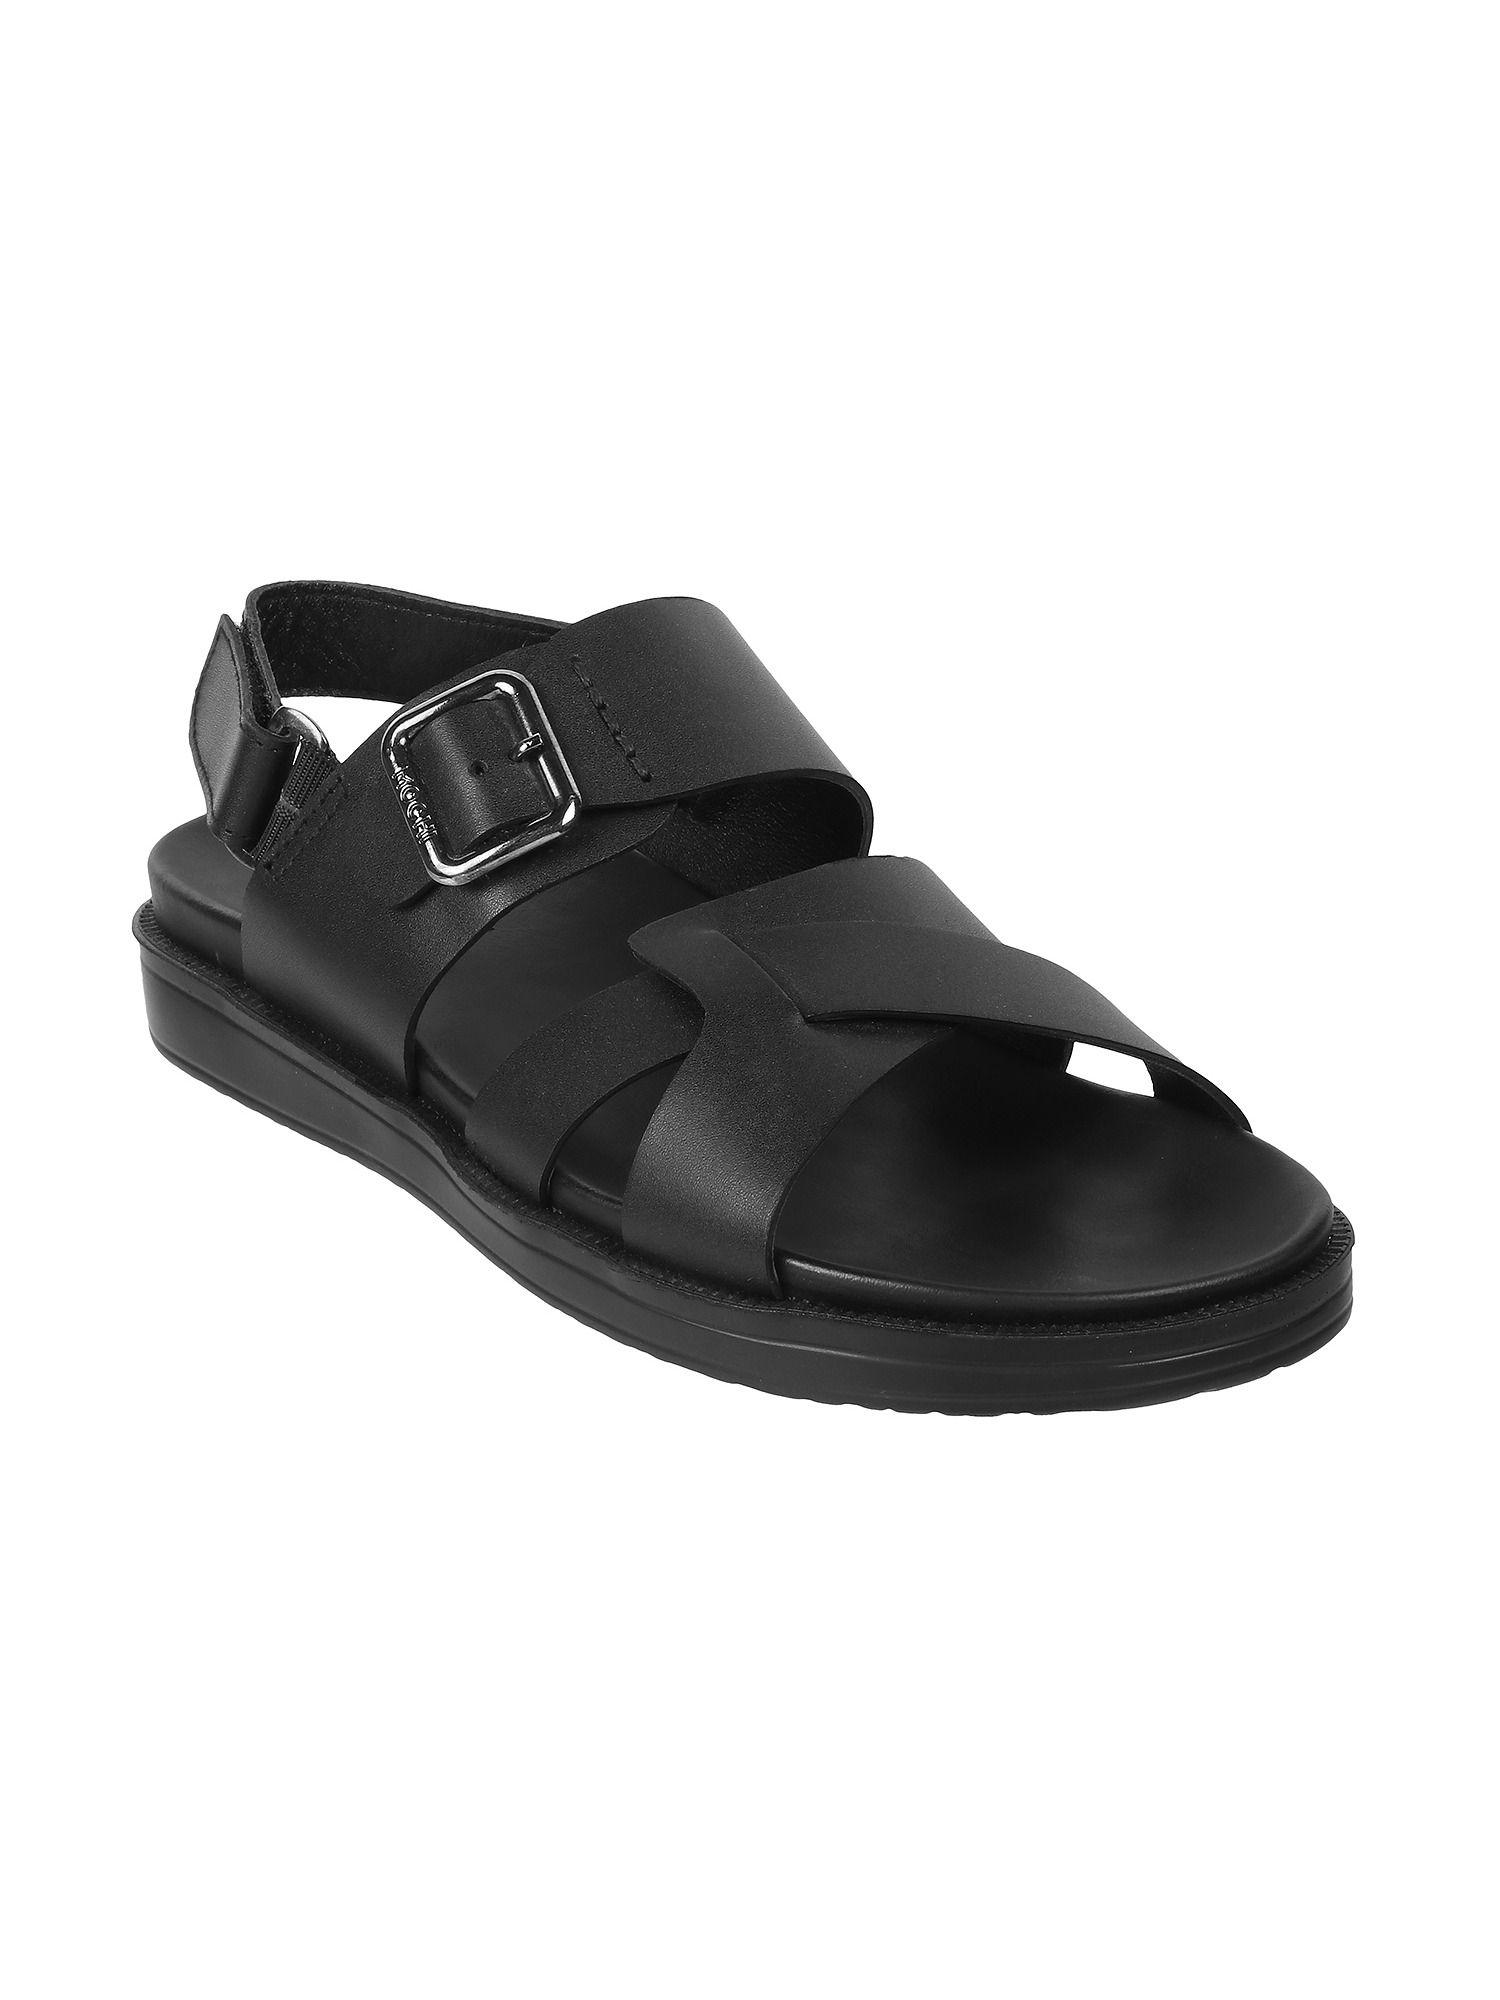 solid/plain black sandals